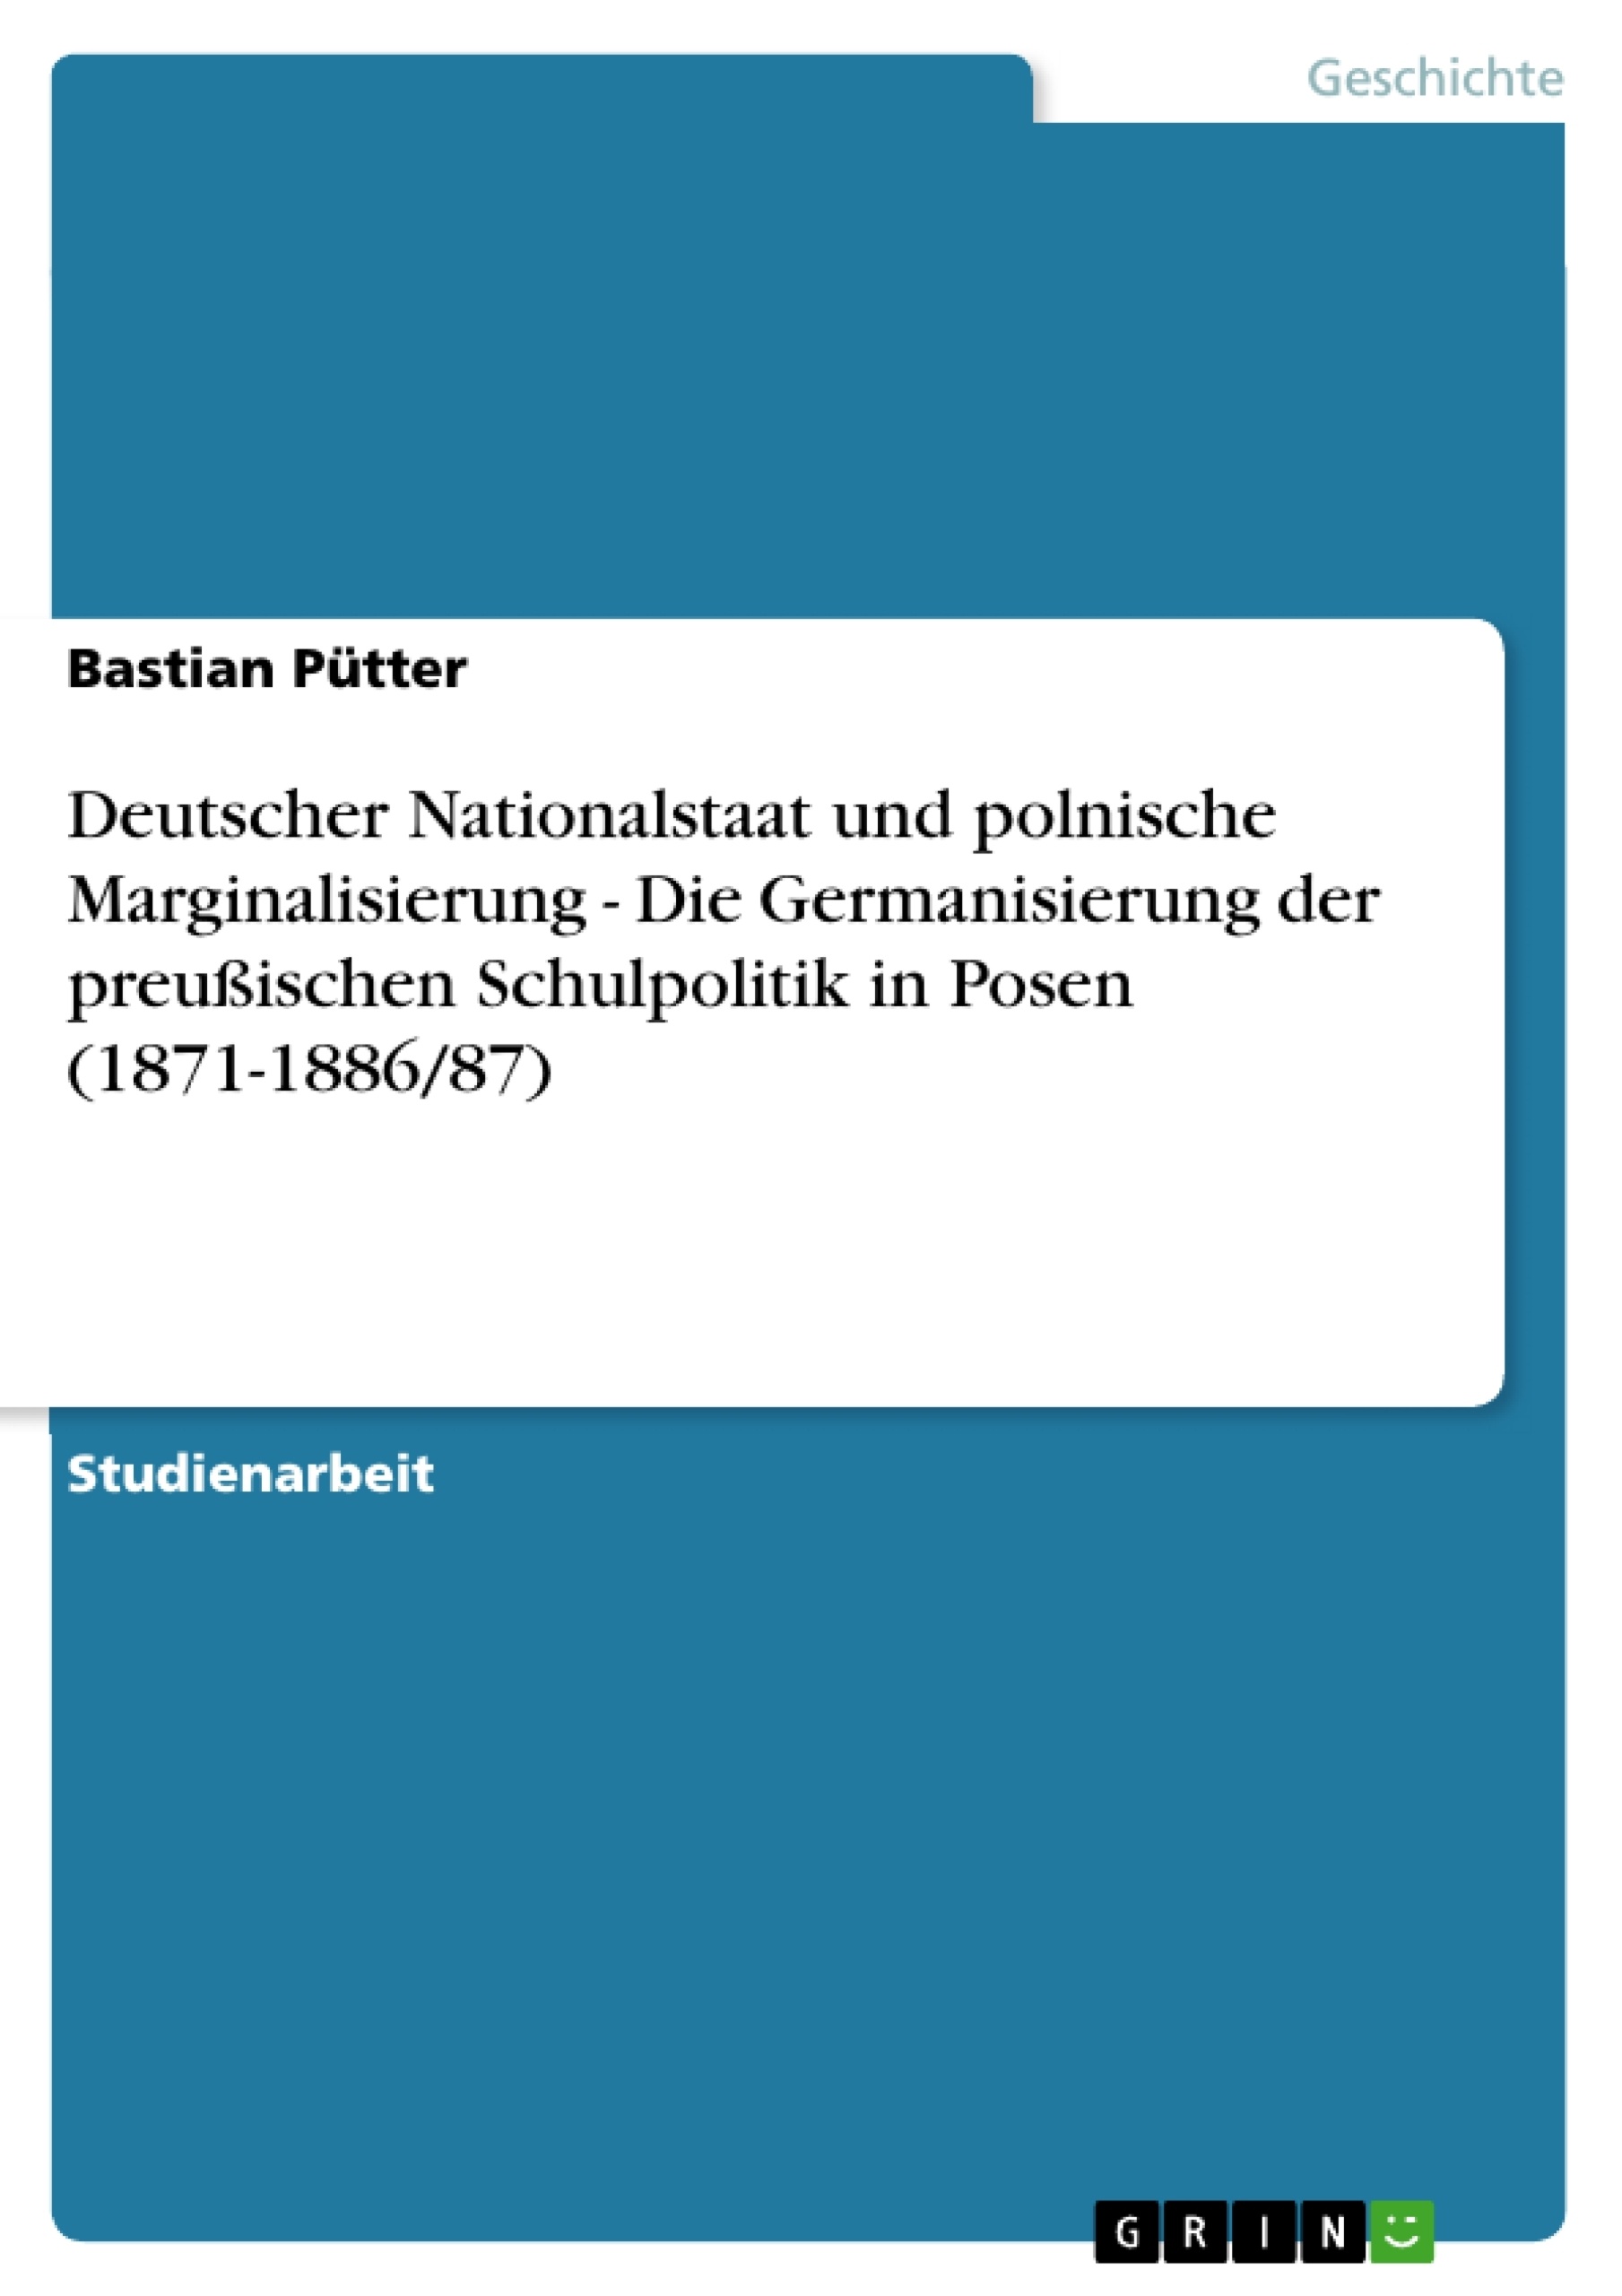 Título: Deutscher Nationalstaat und polnische Marginalisierung - Die Germanisierung der preußischen Schulpolitik in Posen (1871-1886/87)